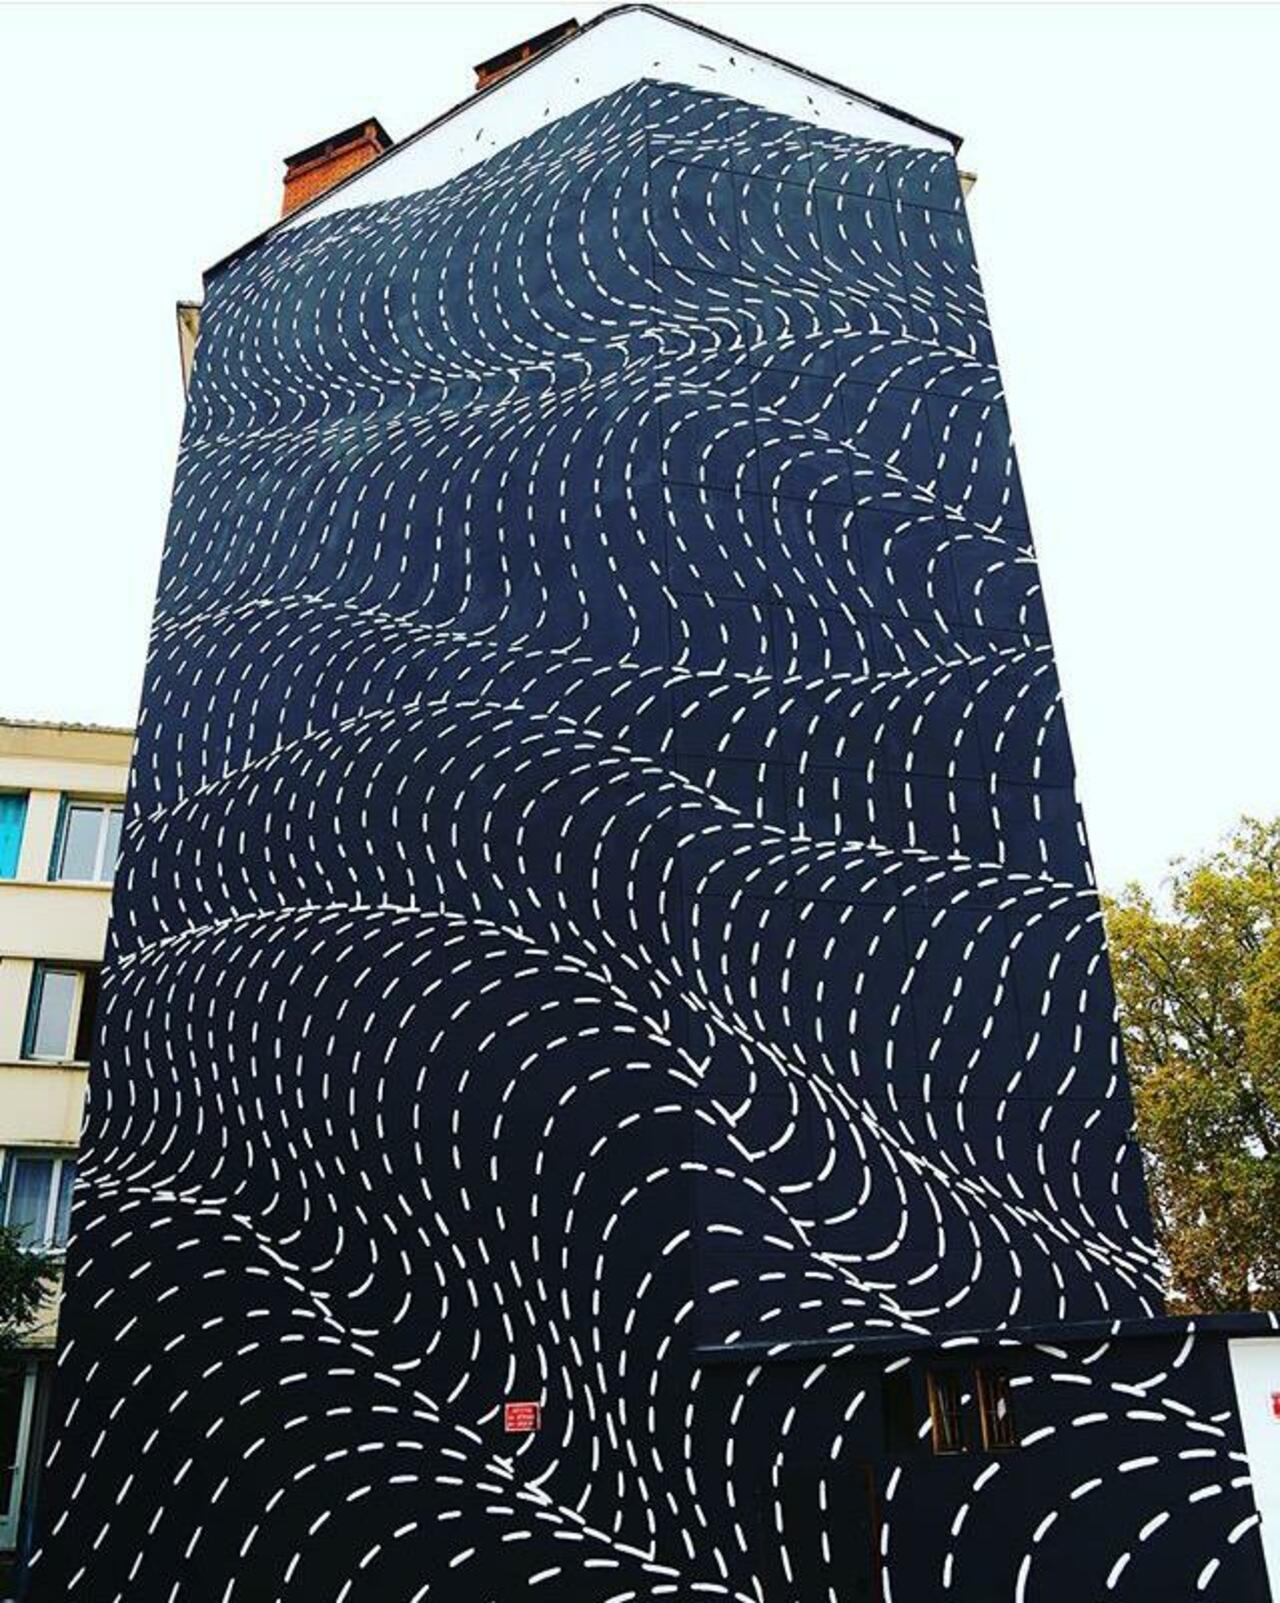 RT @GoogleStreetArt: New Street Art by Brendan Monroe's for WOPS ! Festival in Toulouse, France. 

#art #graffiti #mural #streetart https://t.co/CjU8PlLgmv